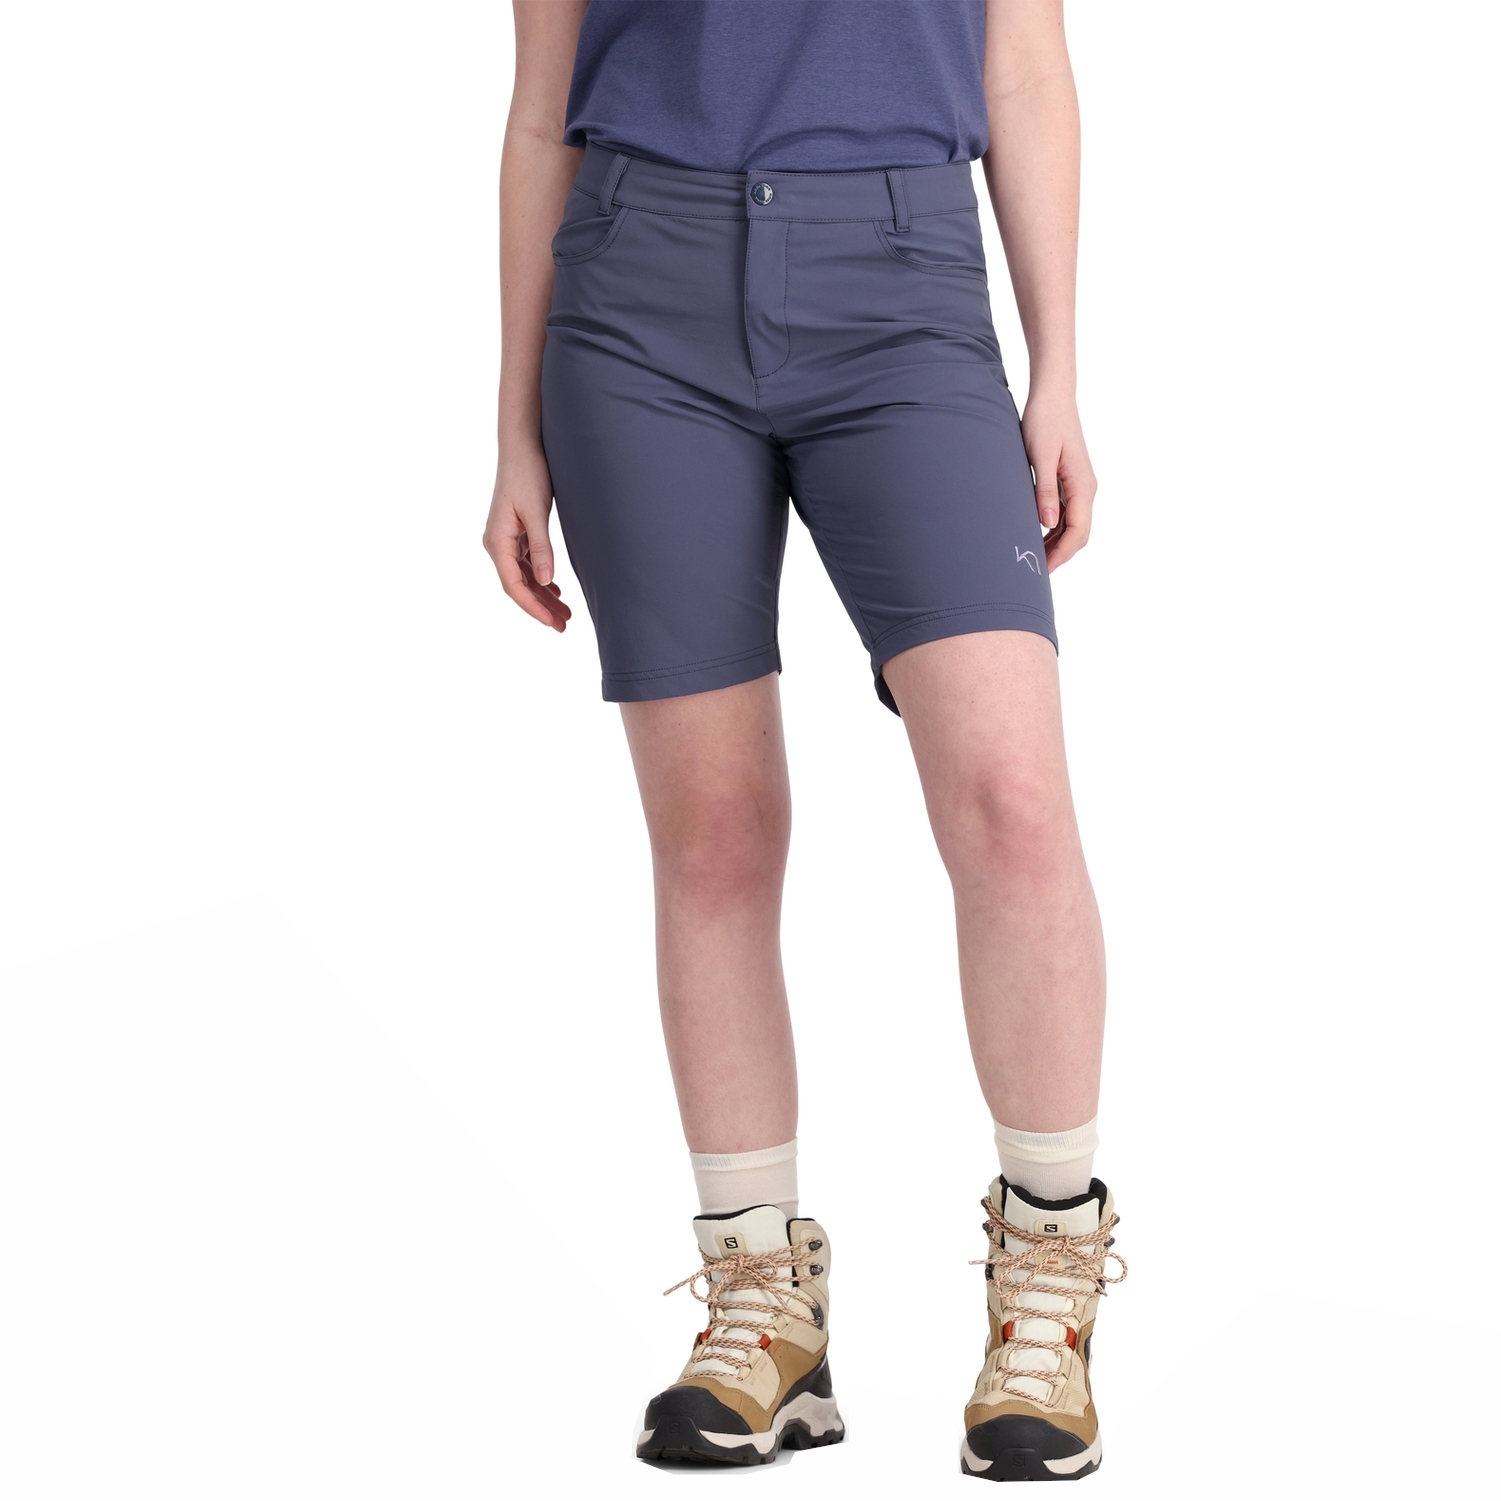 Productfoto van Kari Traa Thale Hiking Shorts Dames - moon